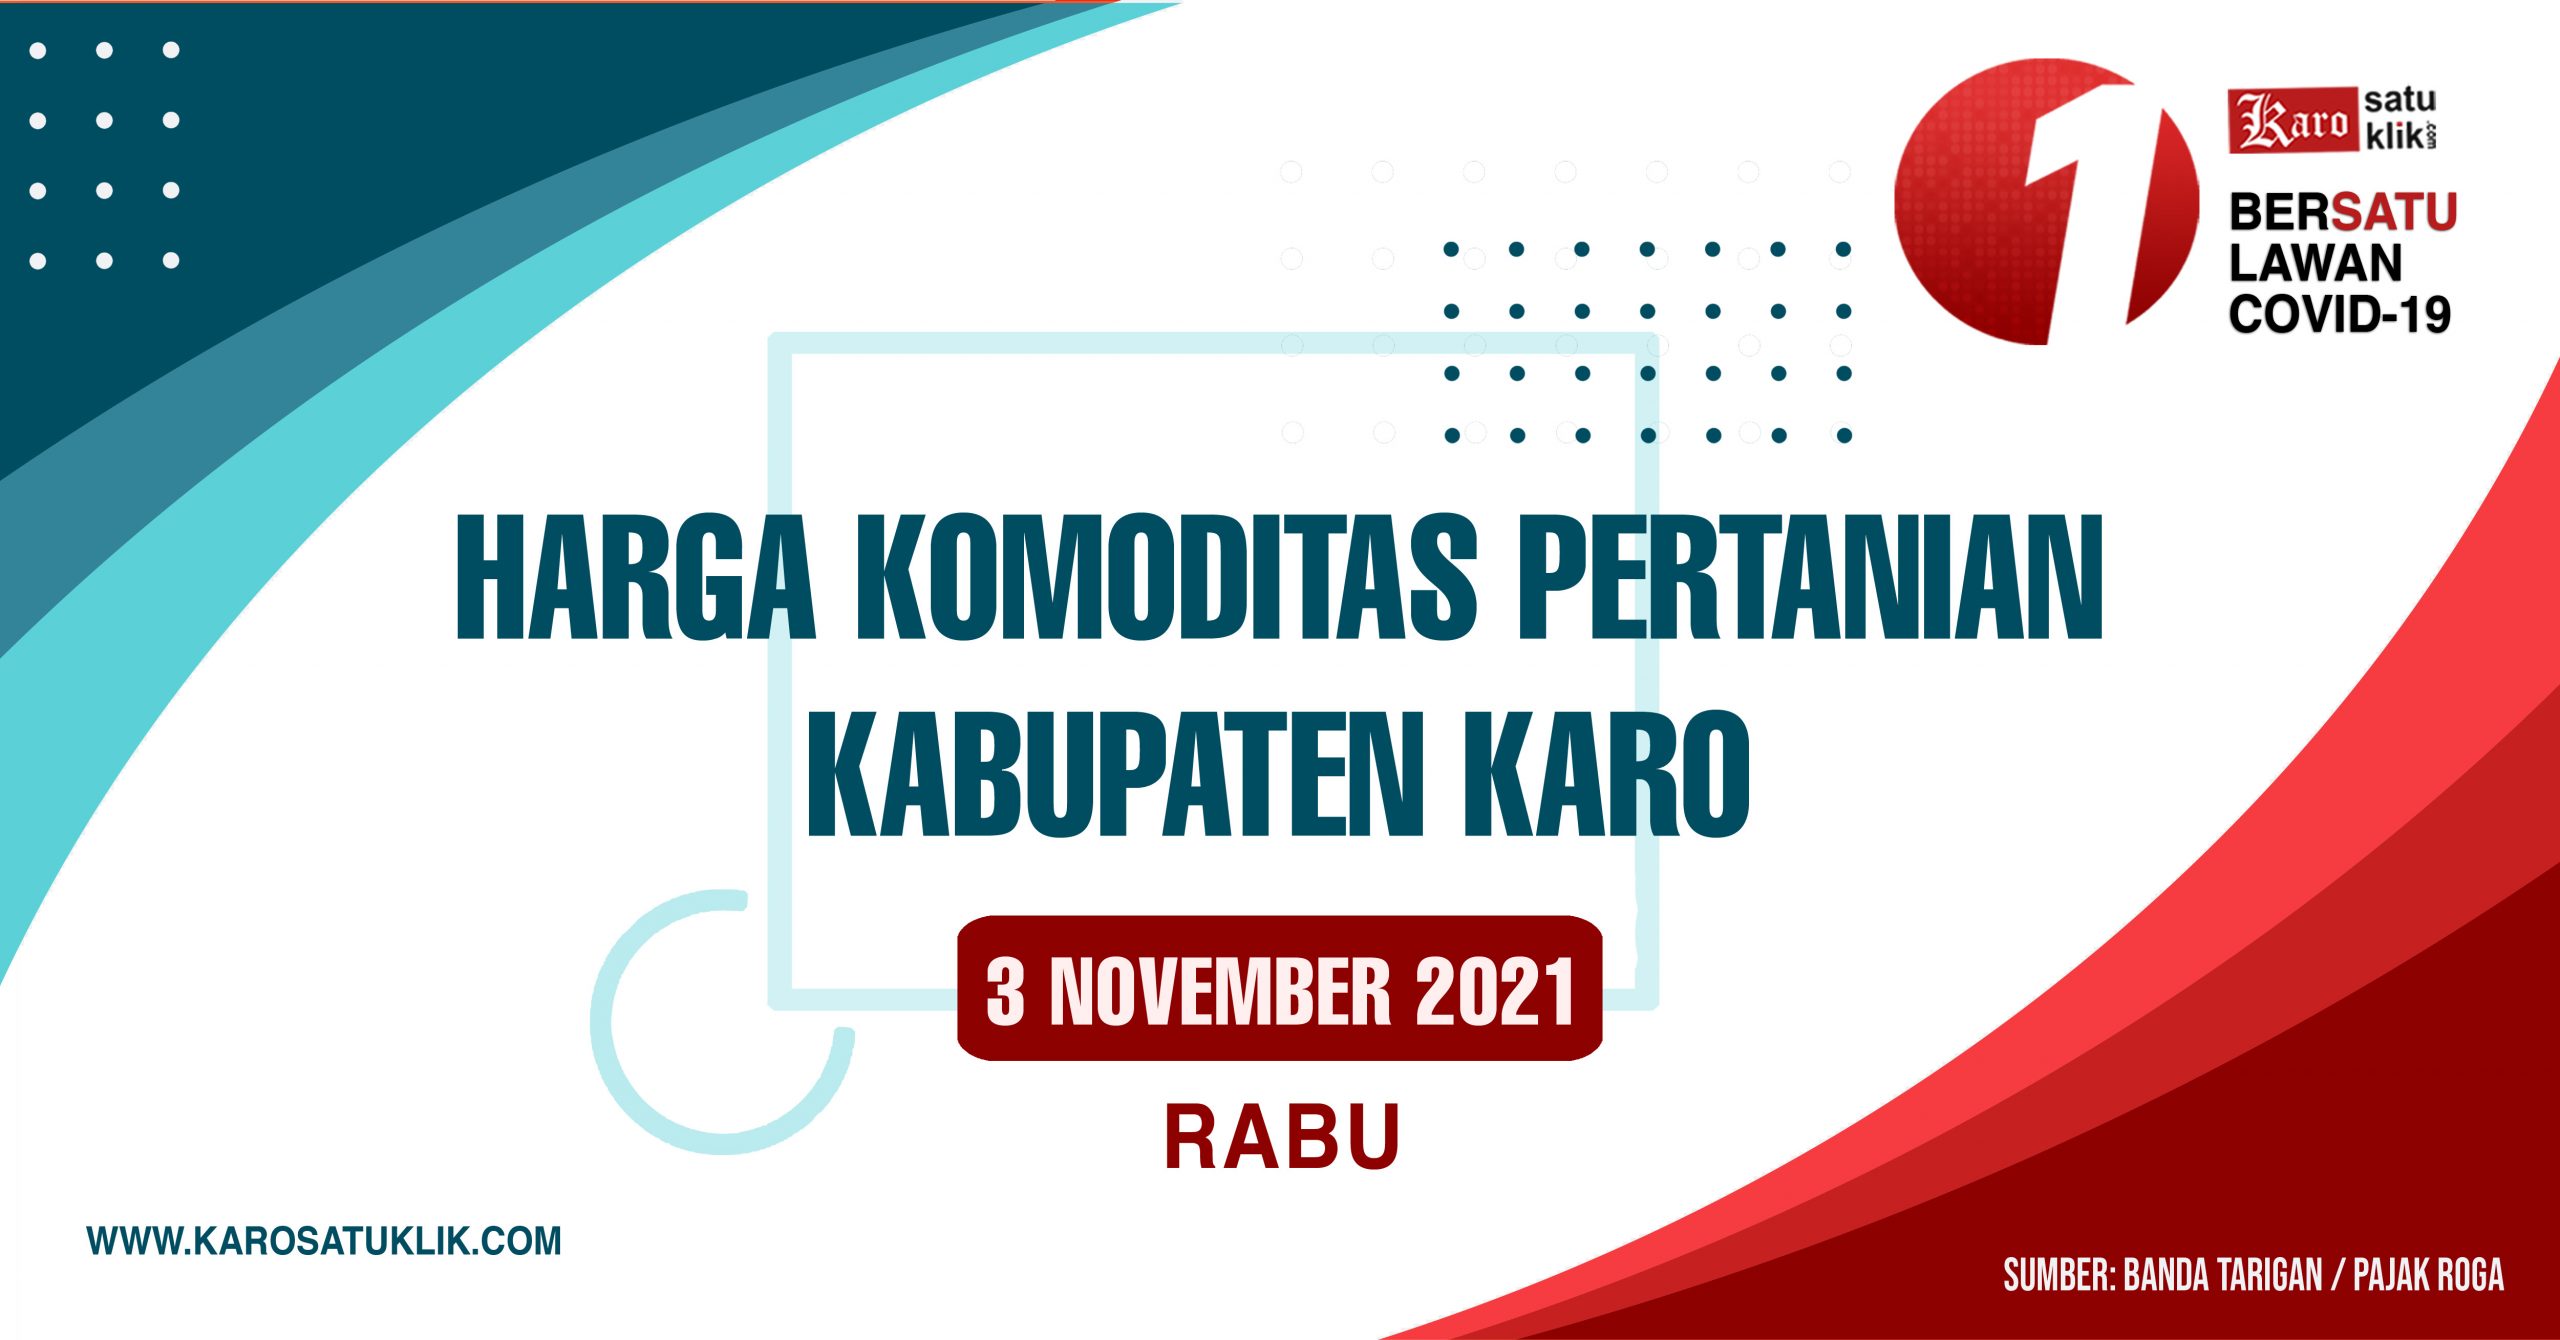 Daftar Harga Komoditas Pertanian Kabupaten Karo, 3 November 2021